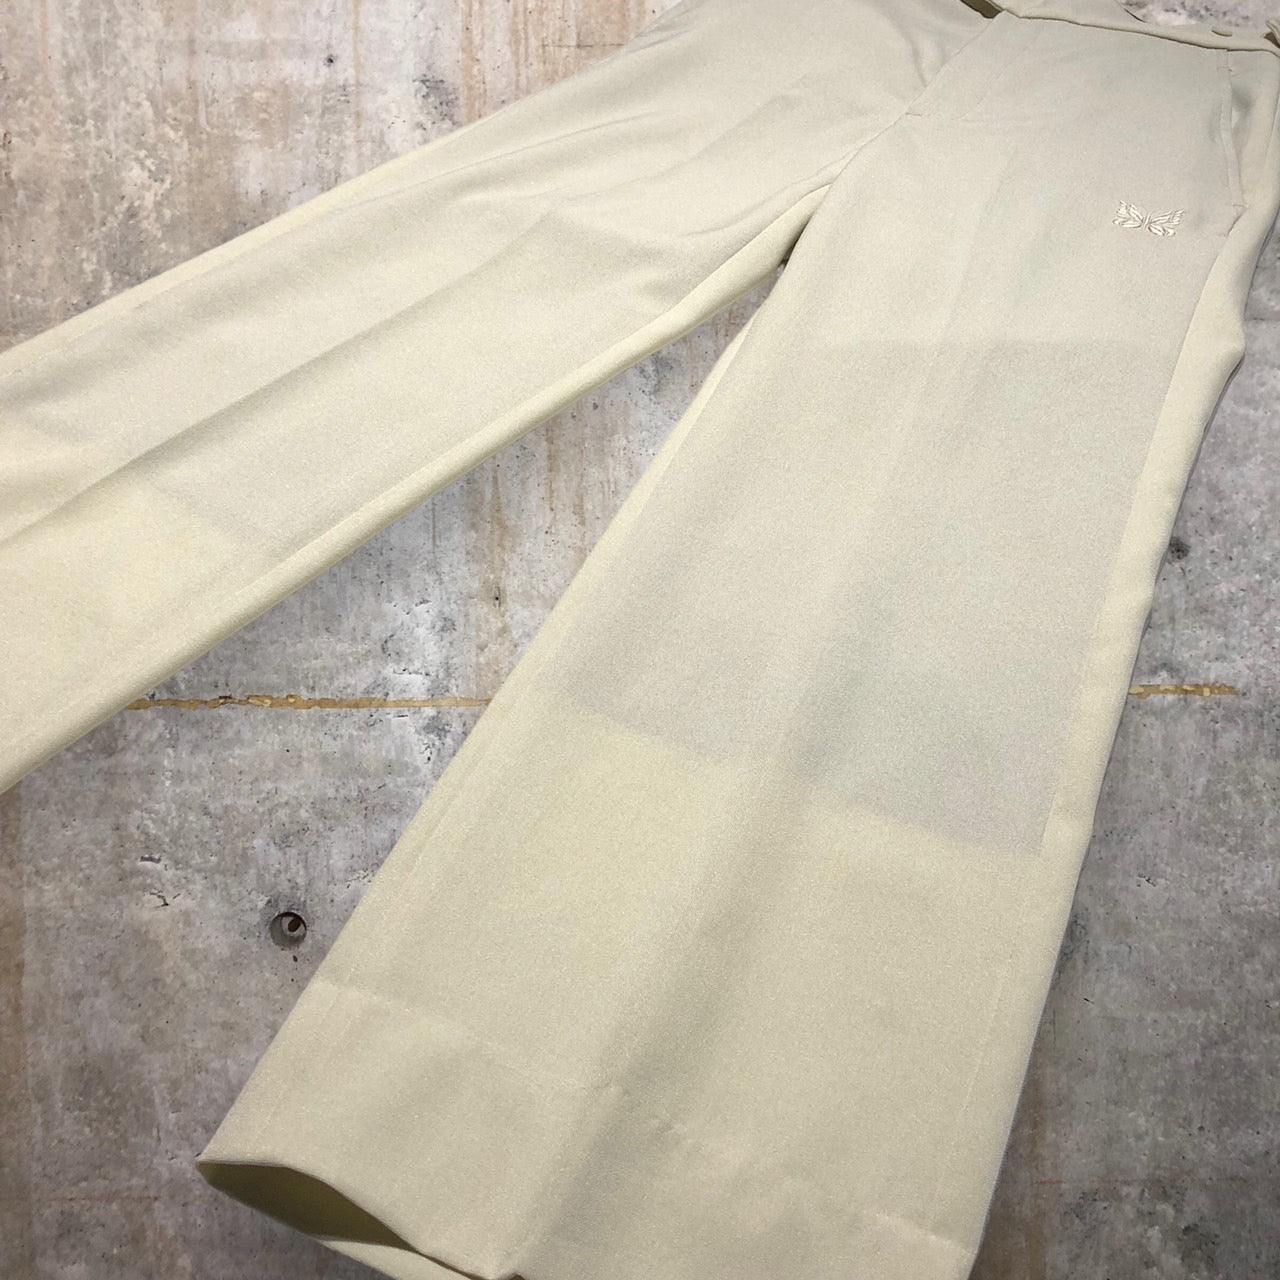 Needles(ニードルズ) Side Tab Trouser/ピヨン刺繍スラックスパンツ KP331 XS ホワイト STUDIOUS別注